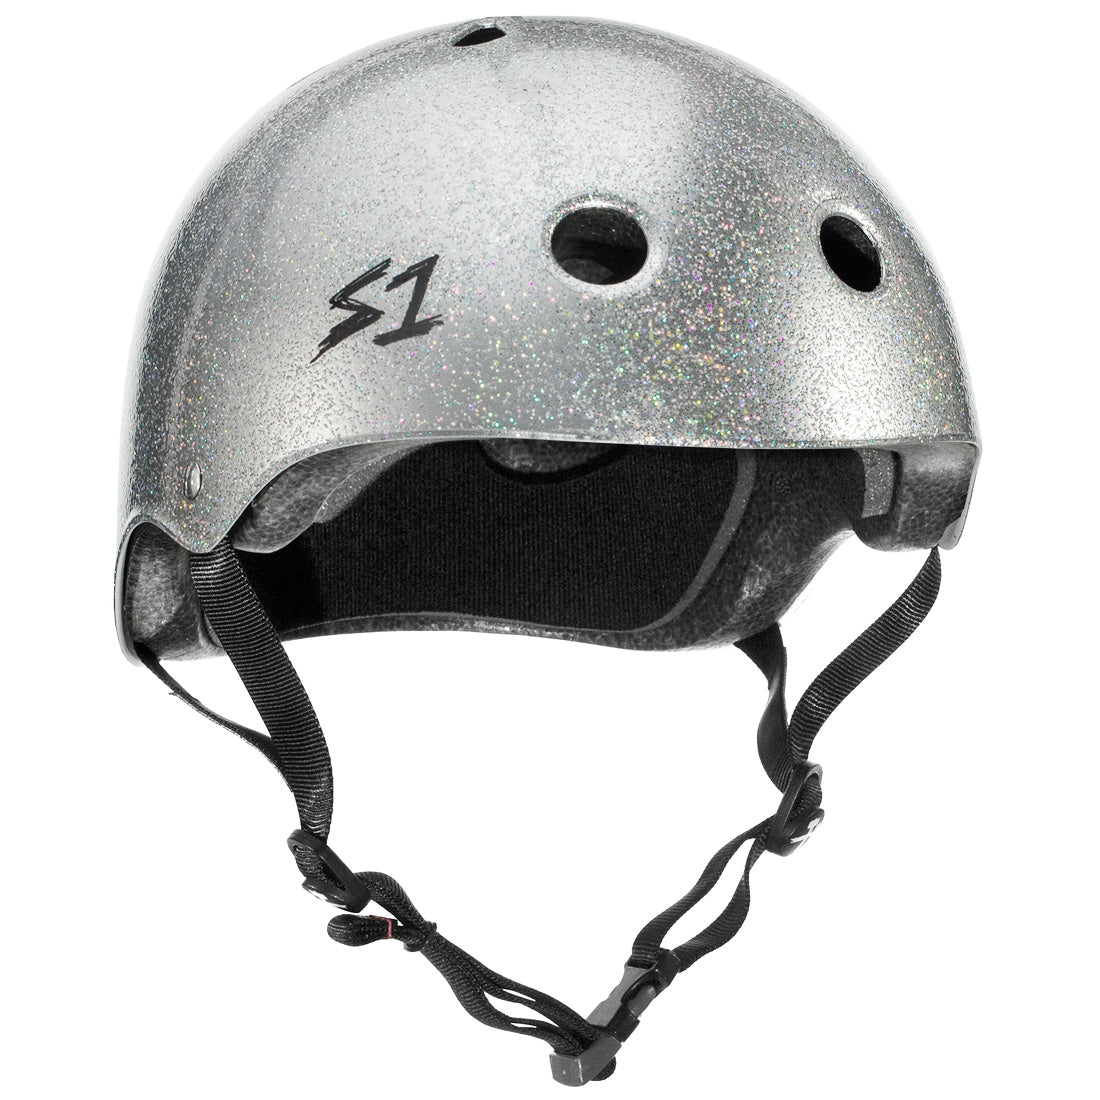 S-One Mega Lifer Helmet - Silver Glitter Helmets